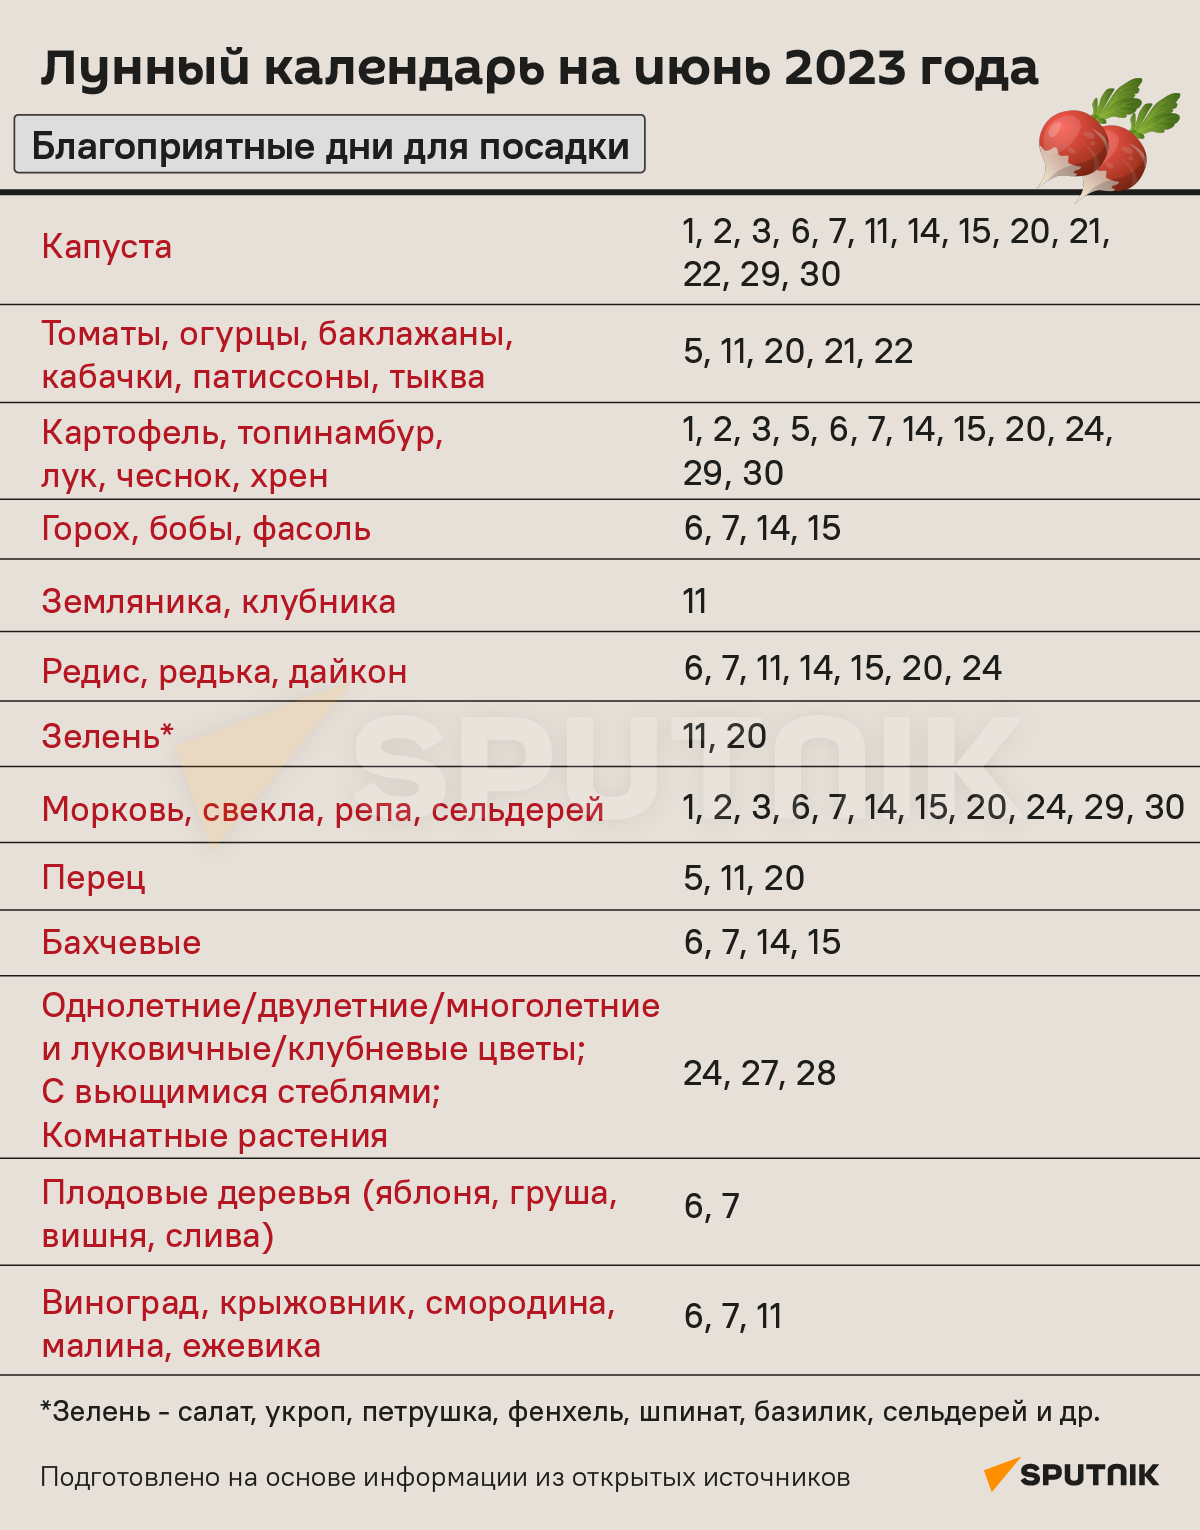 Лунный календарь садовода и огородника на июнь 2023 года - Sputnik Беларусь